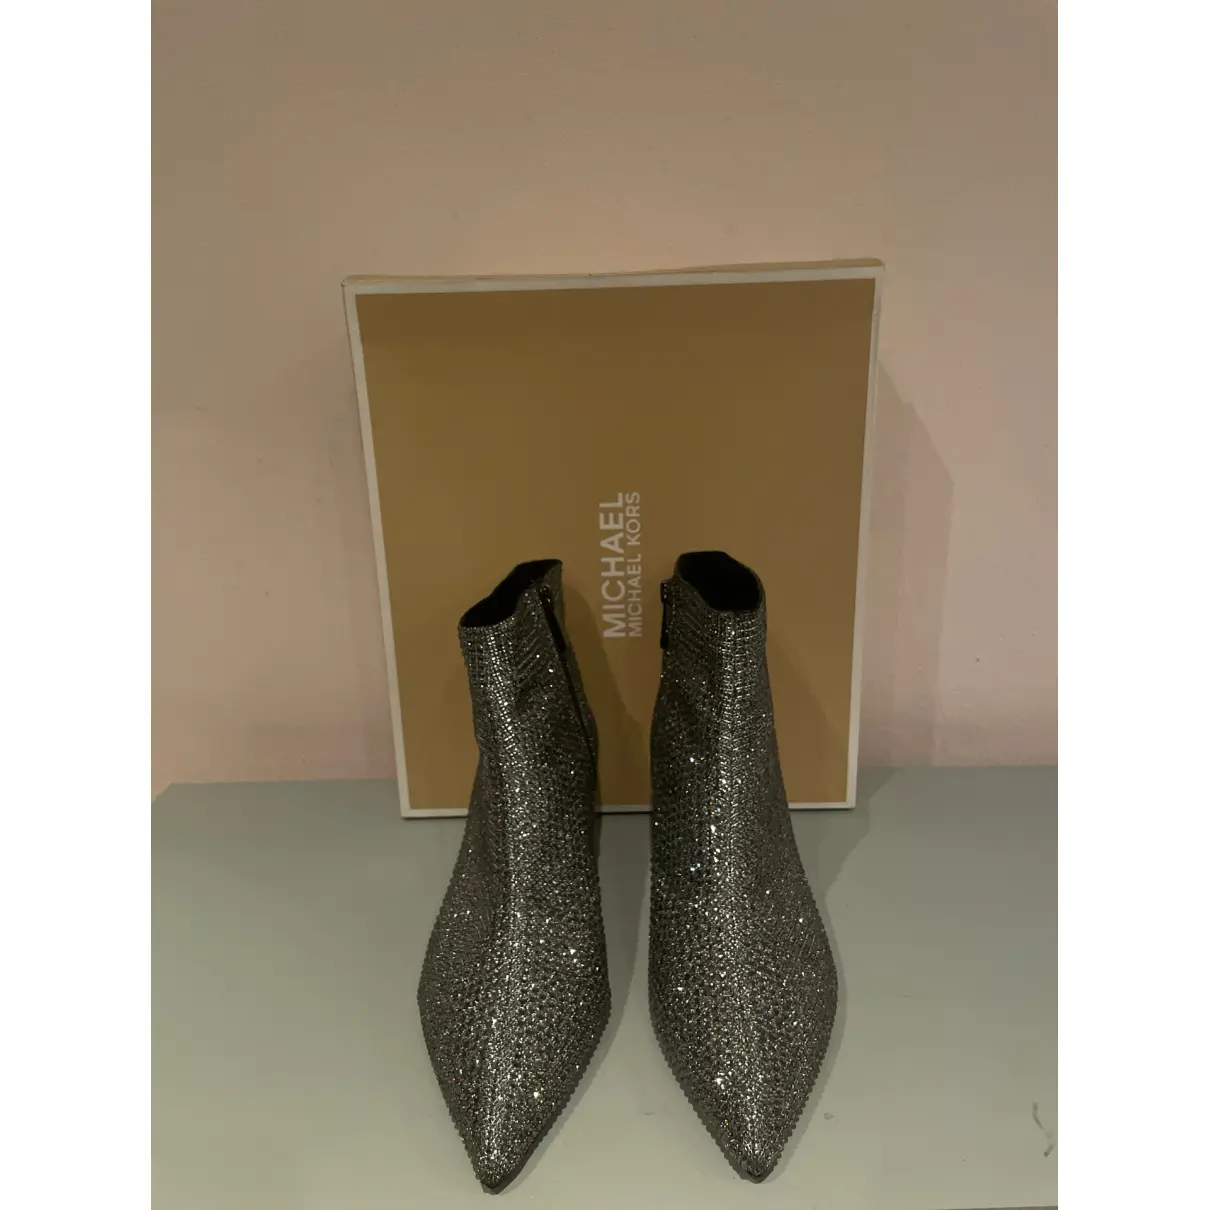 Buy Michael Kors Glitter ankle boots online